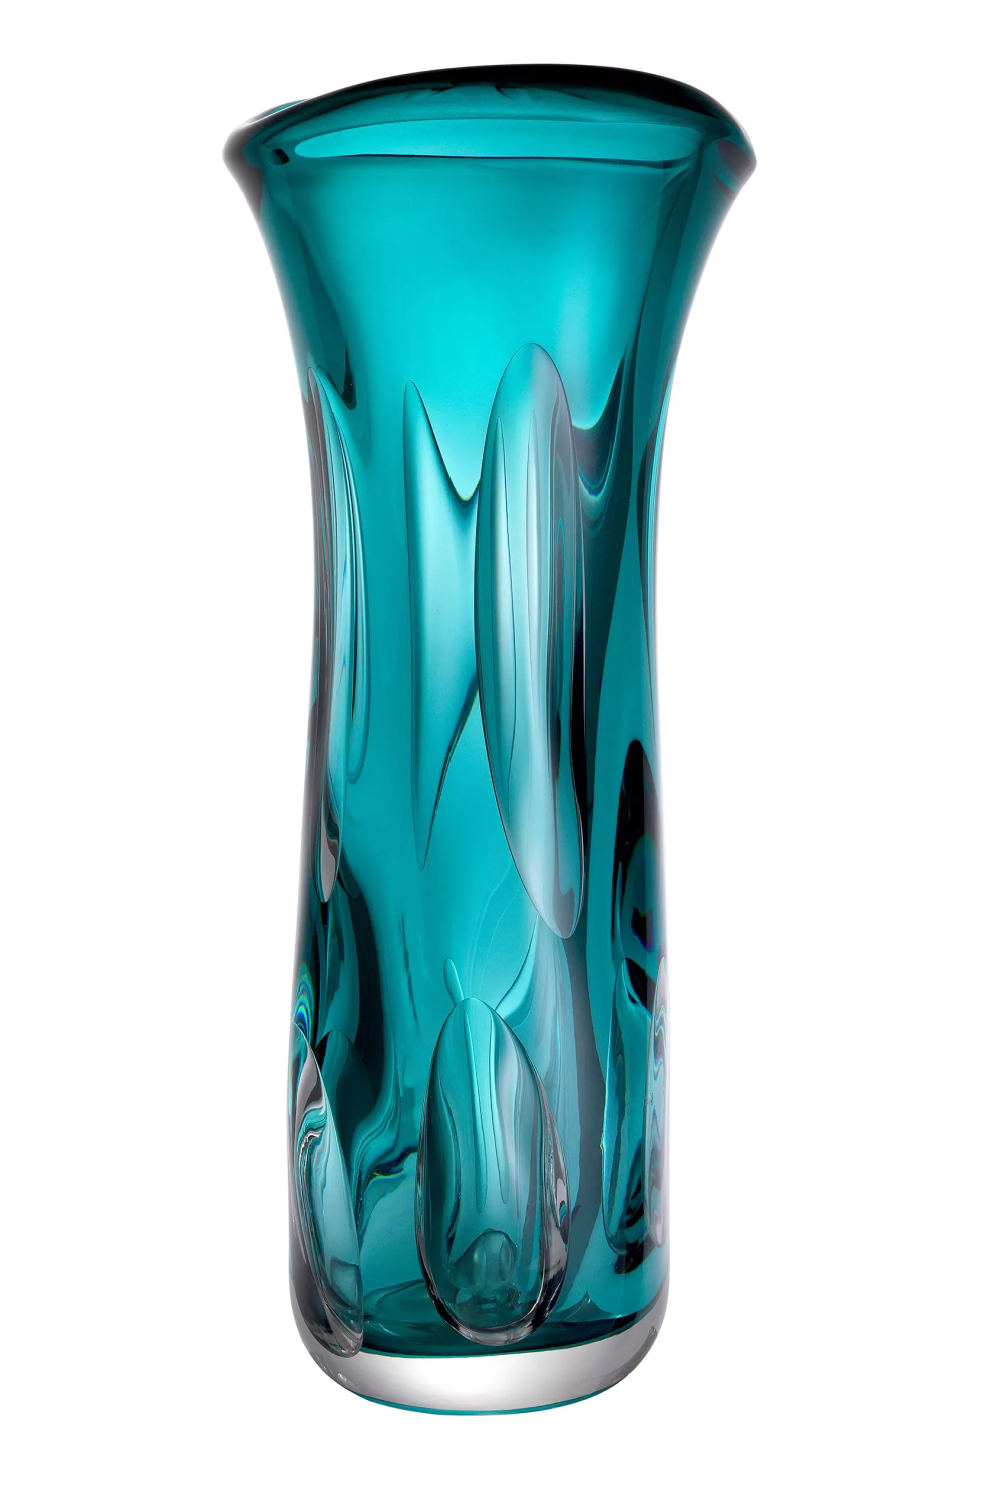 Turquoise Handblown Glass Vase | Eichholtz Matteo L | Oroa.com